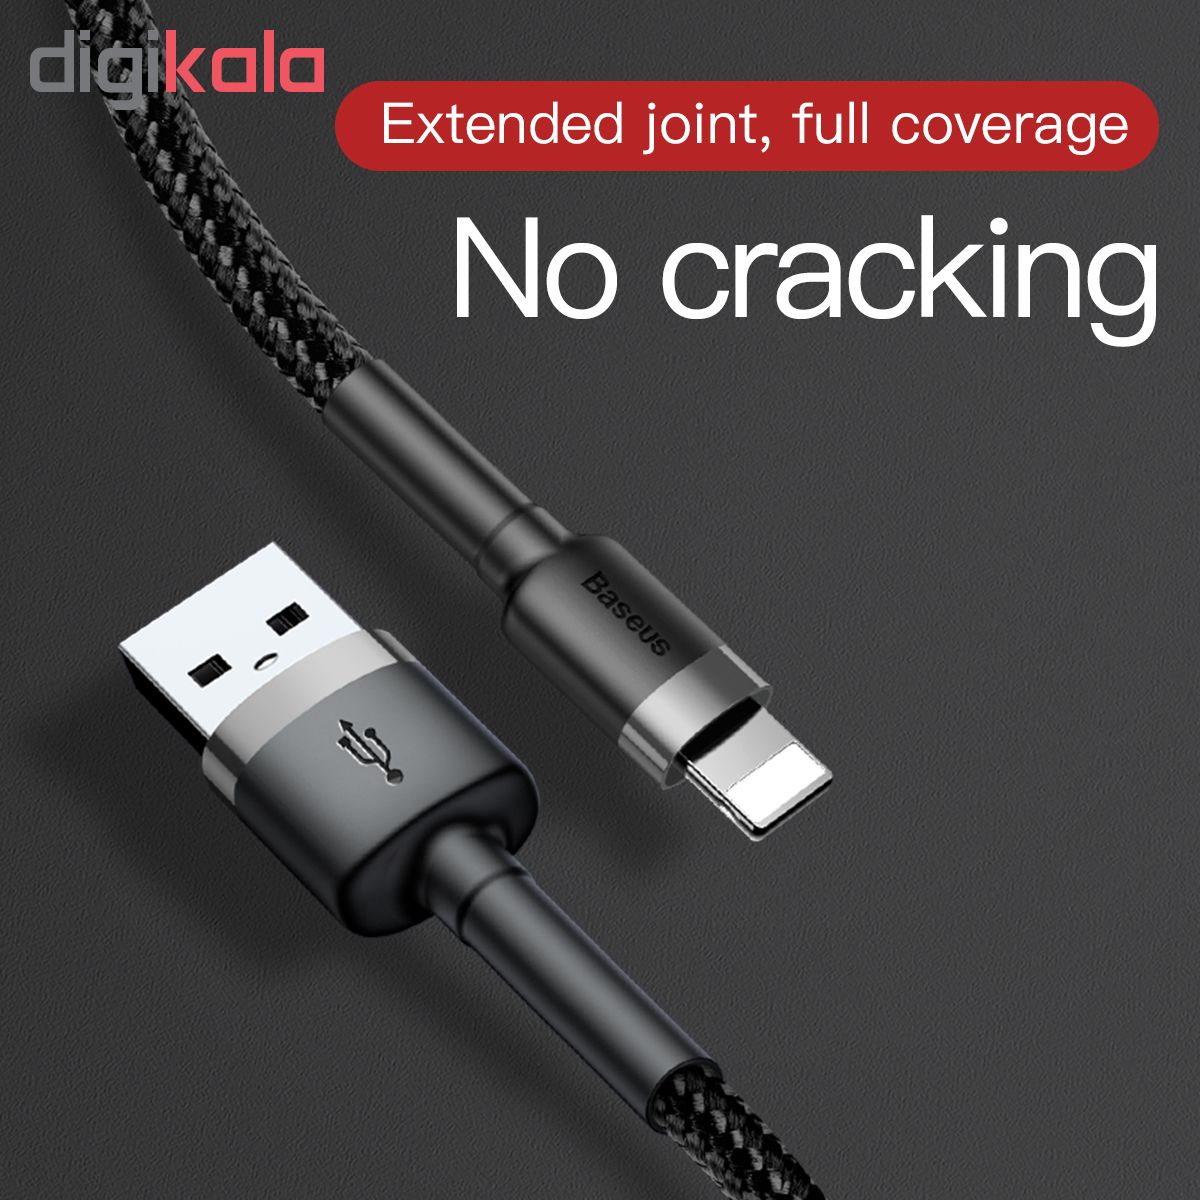 کابل تبدیل USB به لایتنینگ مدل CALKLF-BG1 طول 1 متر